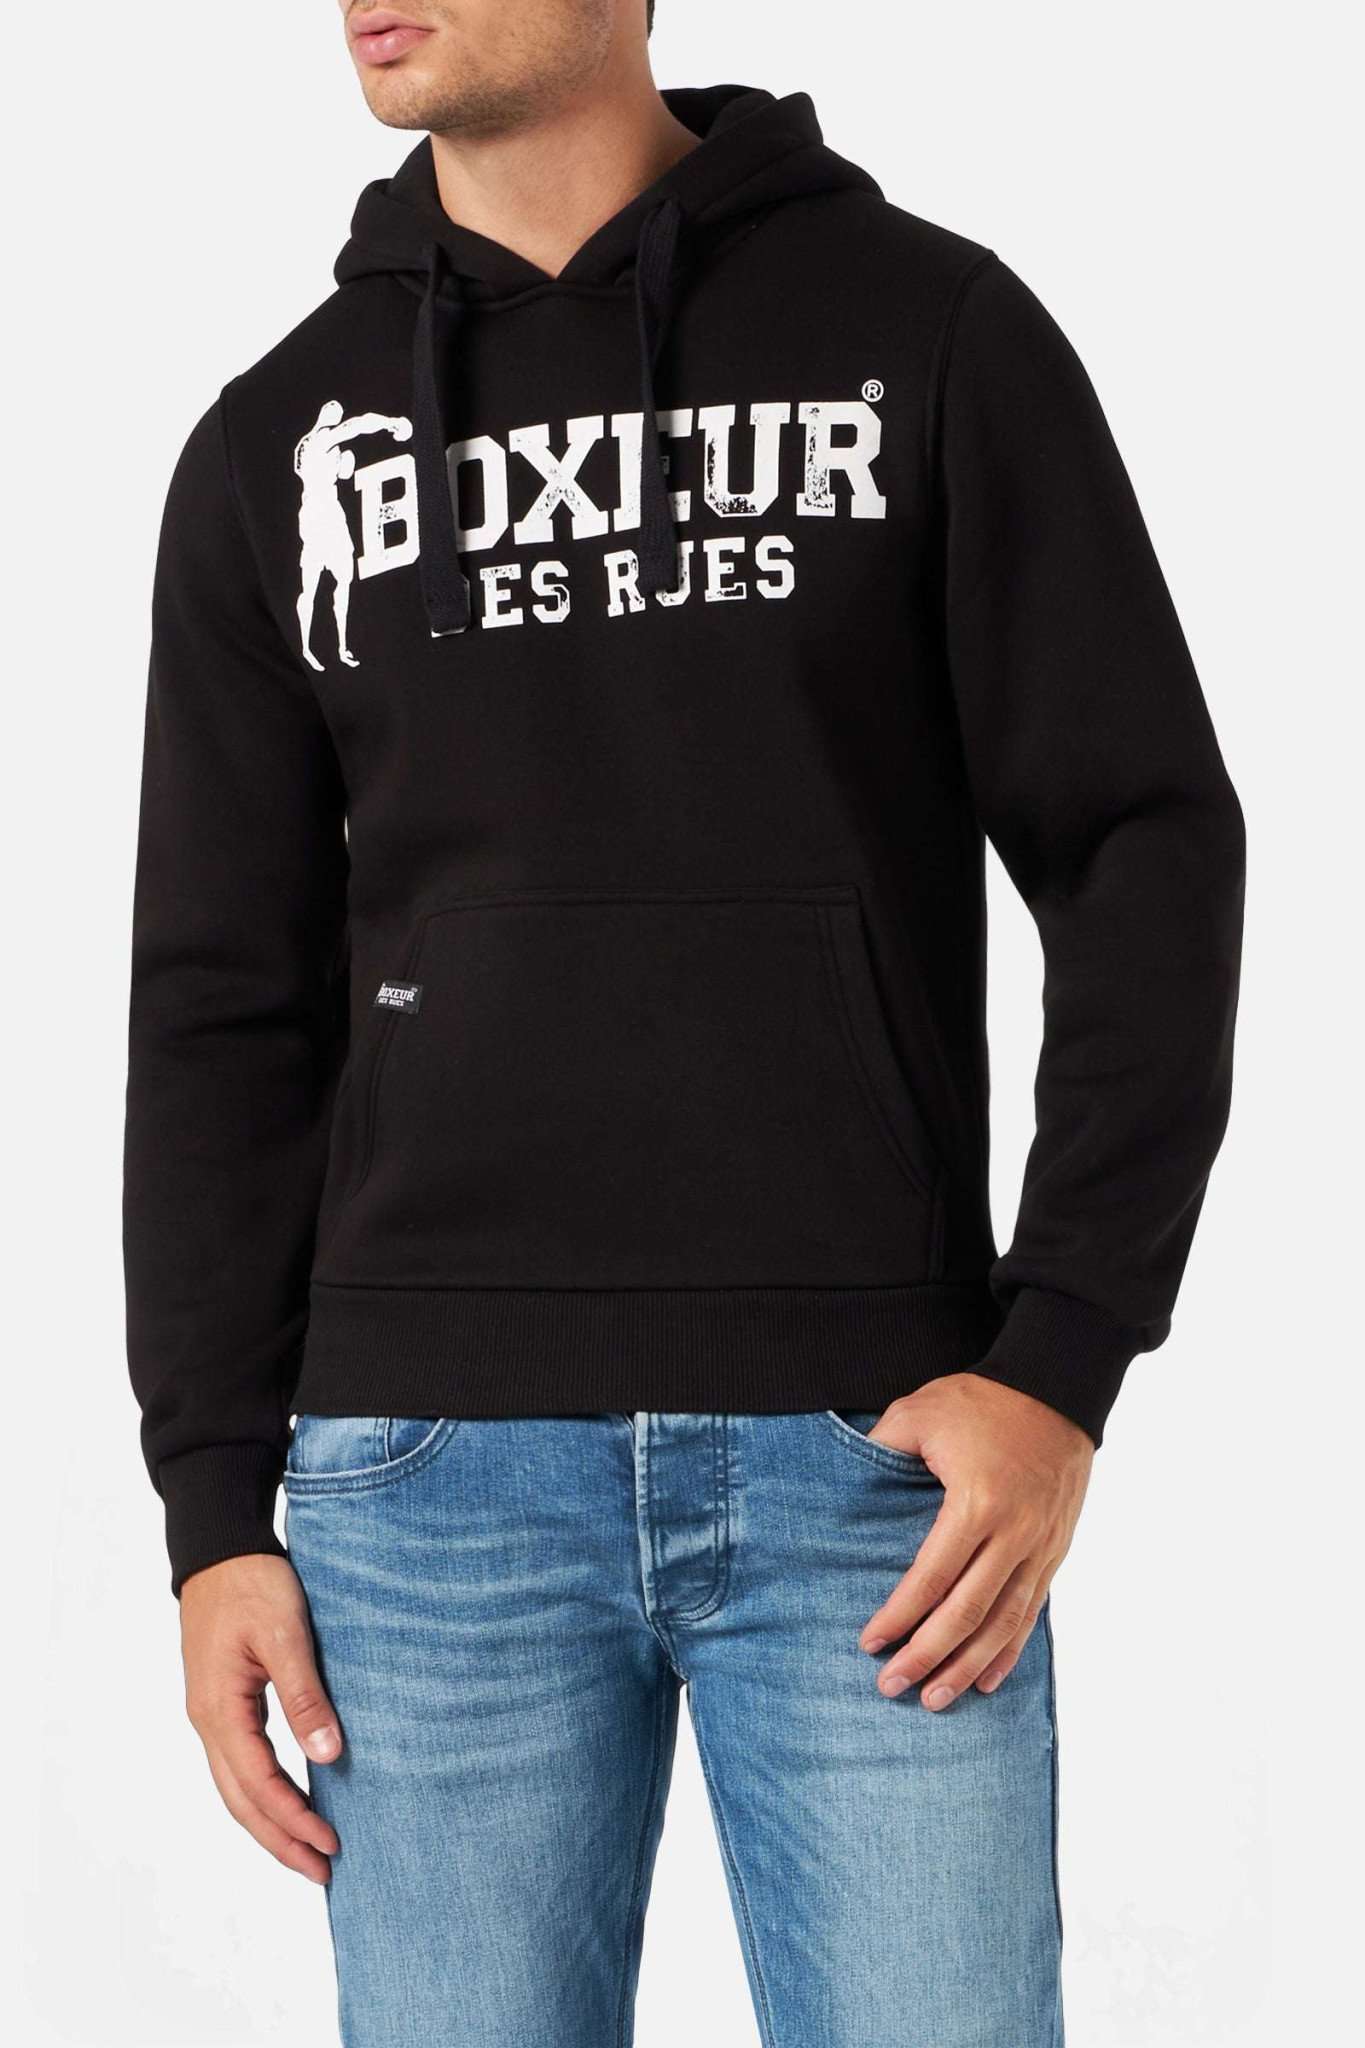 Man Hoodie Sweatshirt in Blackwhite Kapuzenpullover Boxeur des Rues   